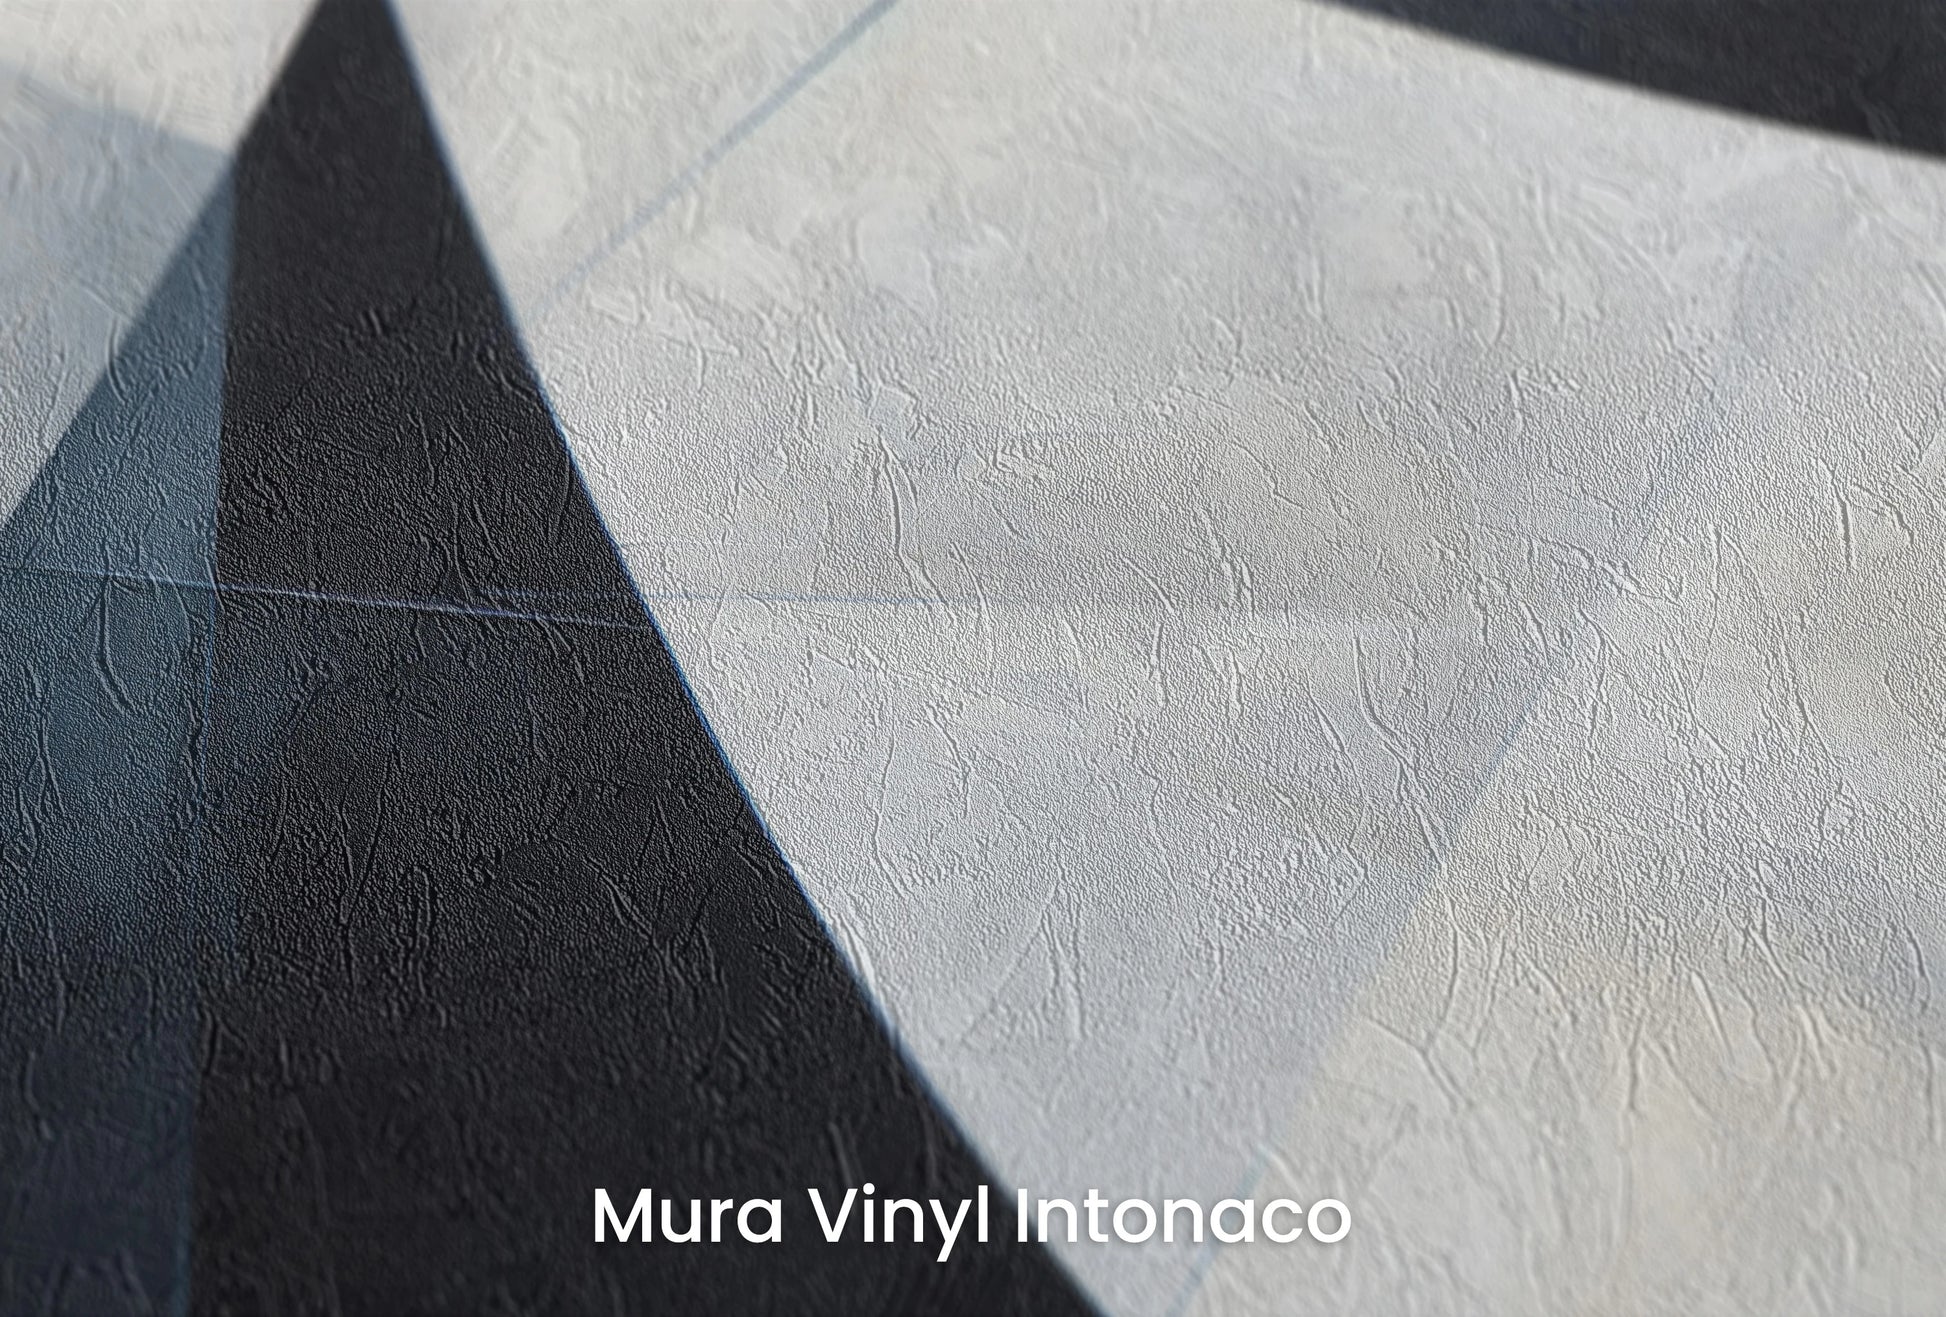 Zbliżenie na artystyczną fototapetę o nazwie Monochrome Slices na podłożu Mura Vinyl Intonaco - struktura tartego tynku.